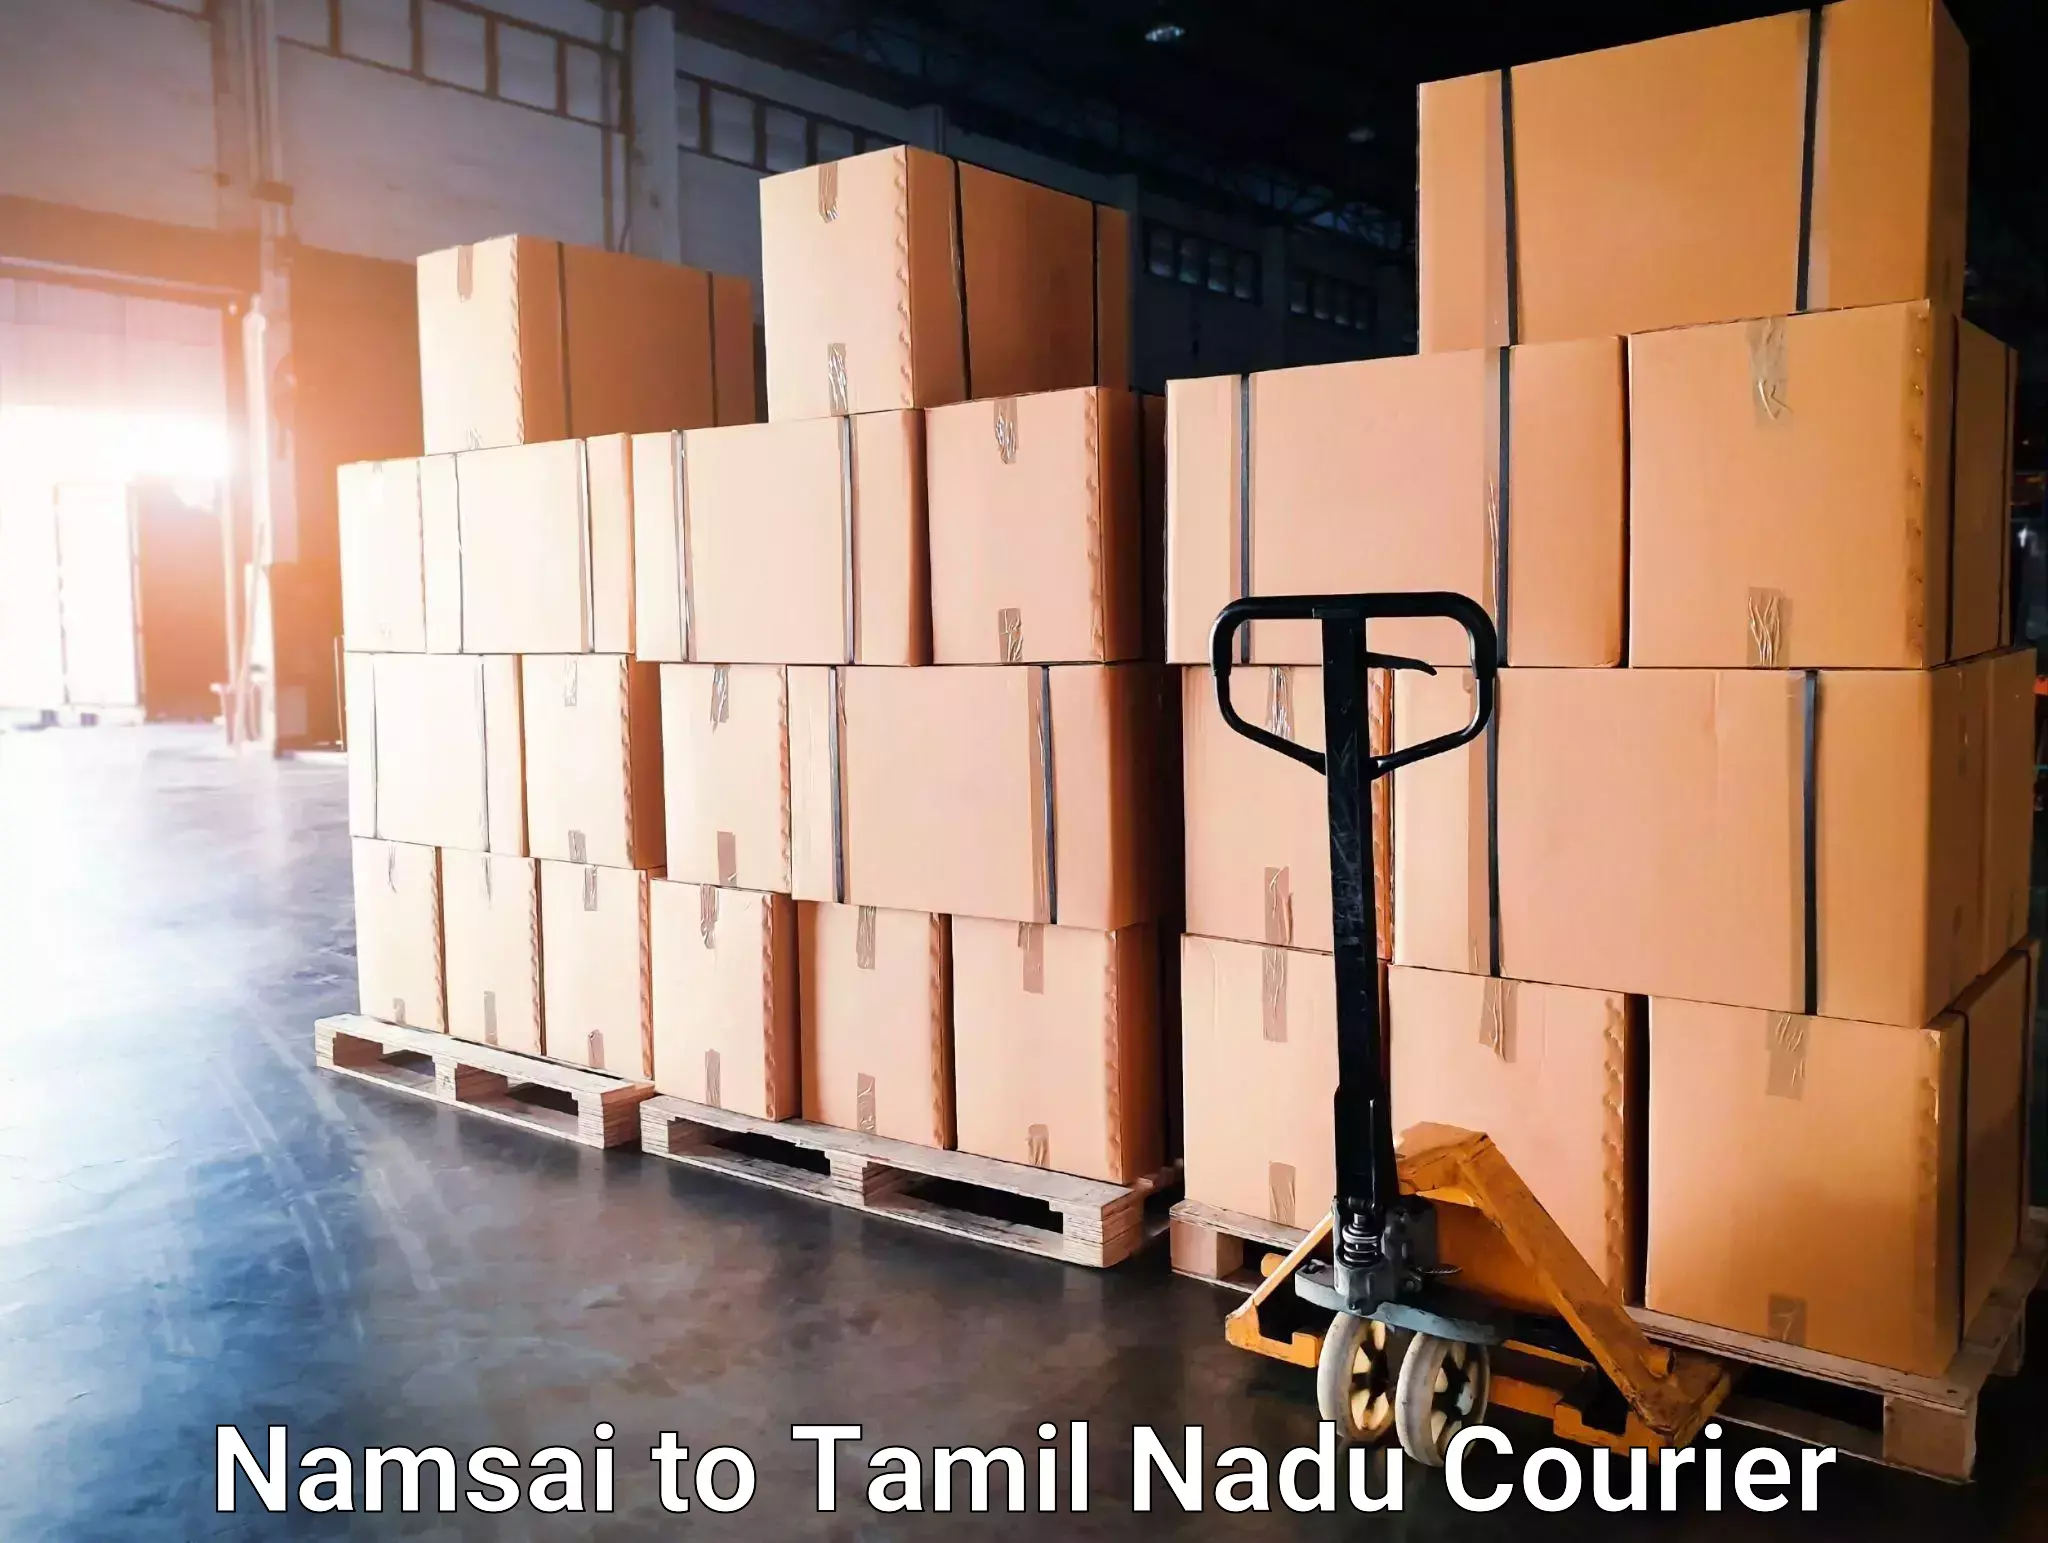 Global shipping solutions Namsai to Nagapattinam